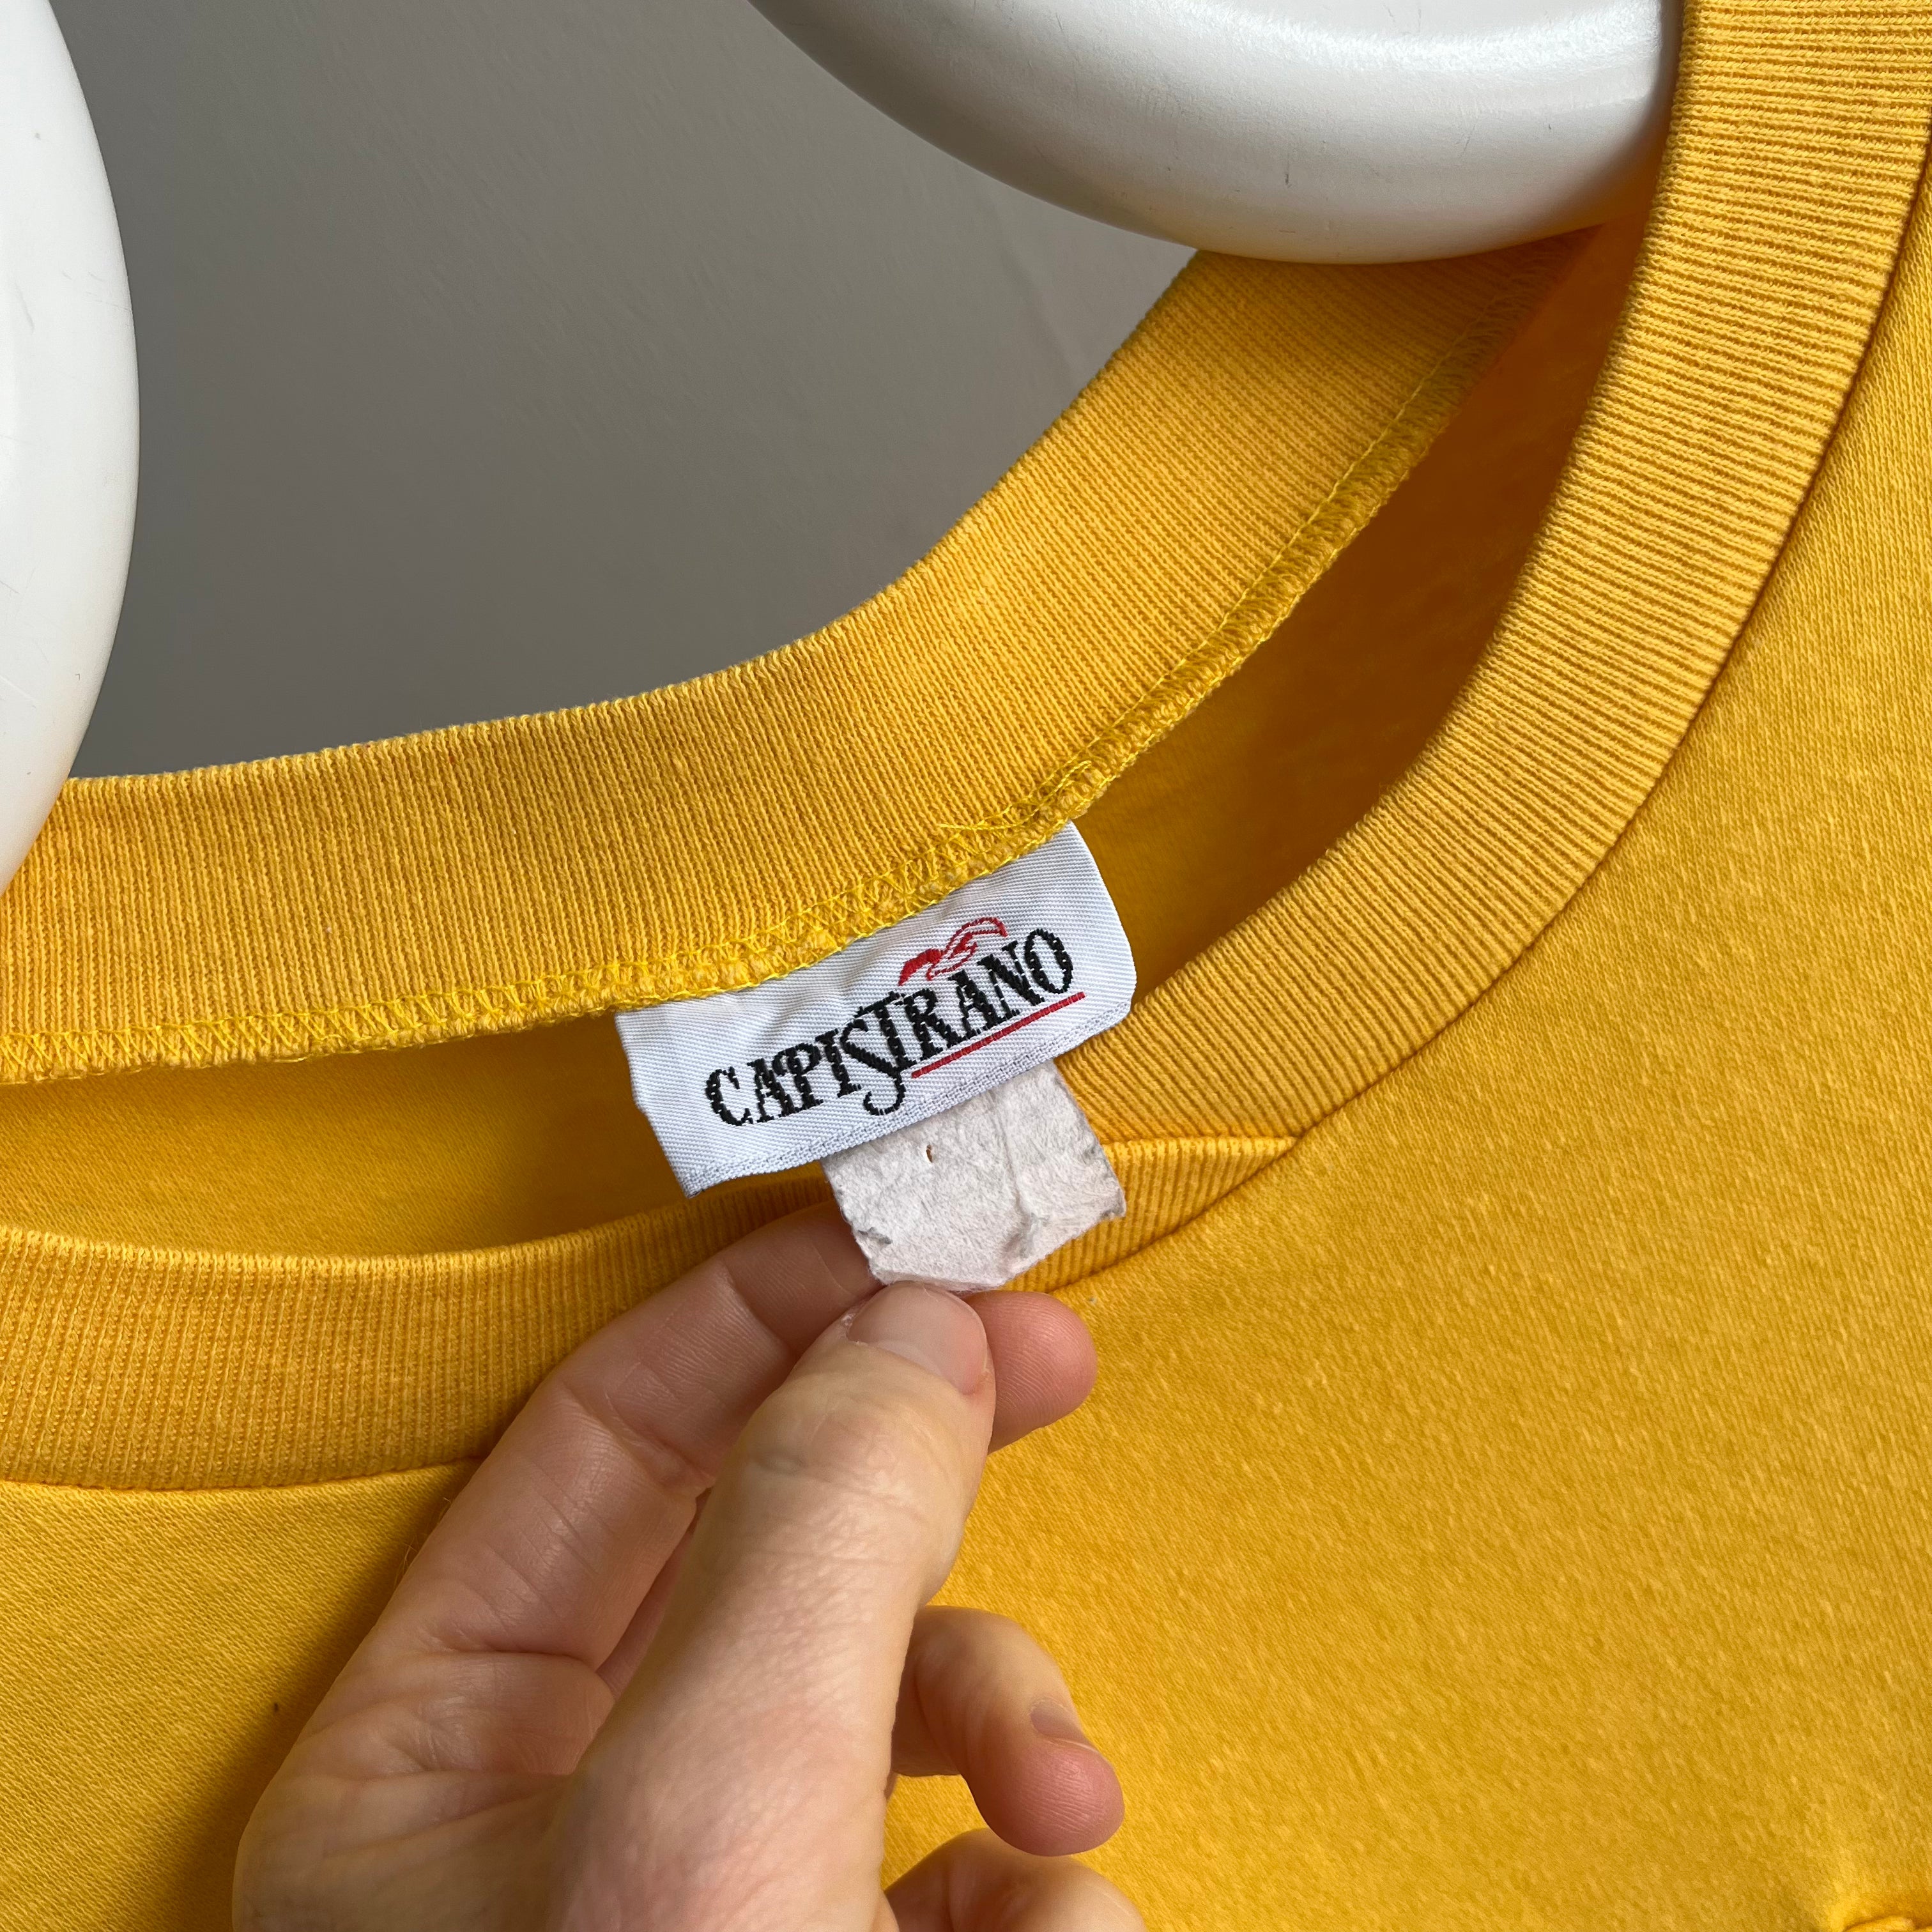 1990s Boxy Marigold Yellow Knit Oversized T-Shirt